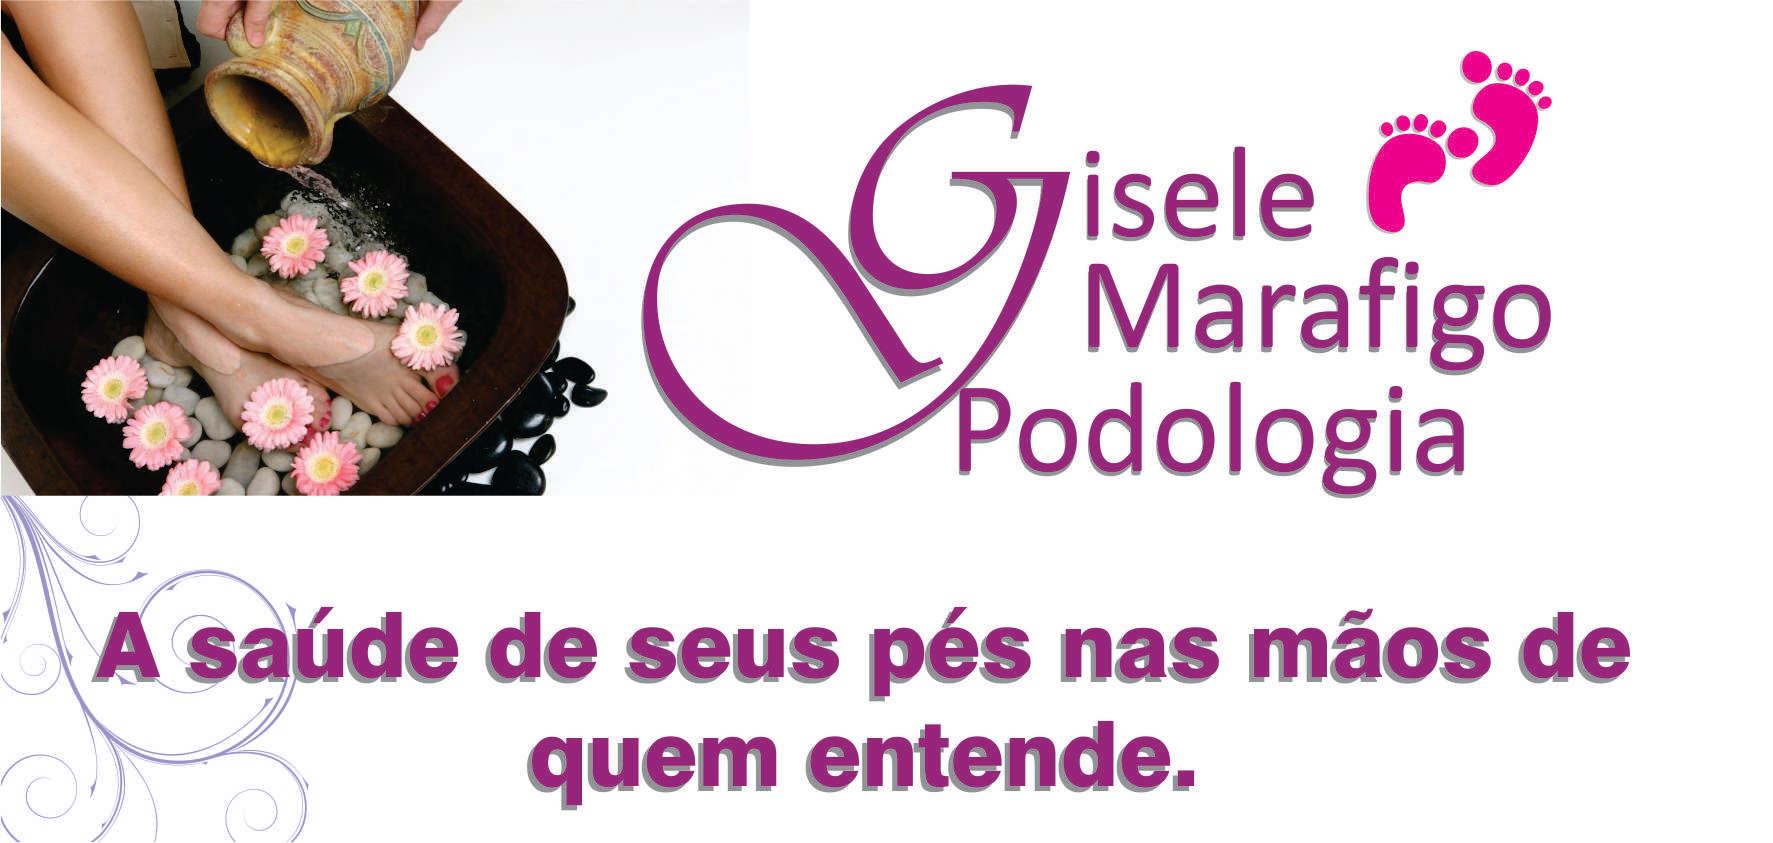 CLINICA MARAFIGO - Massoterapia - São José dos Pinhais, PR